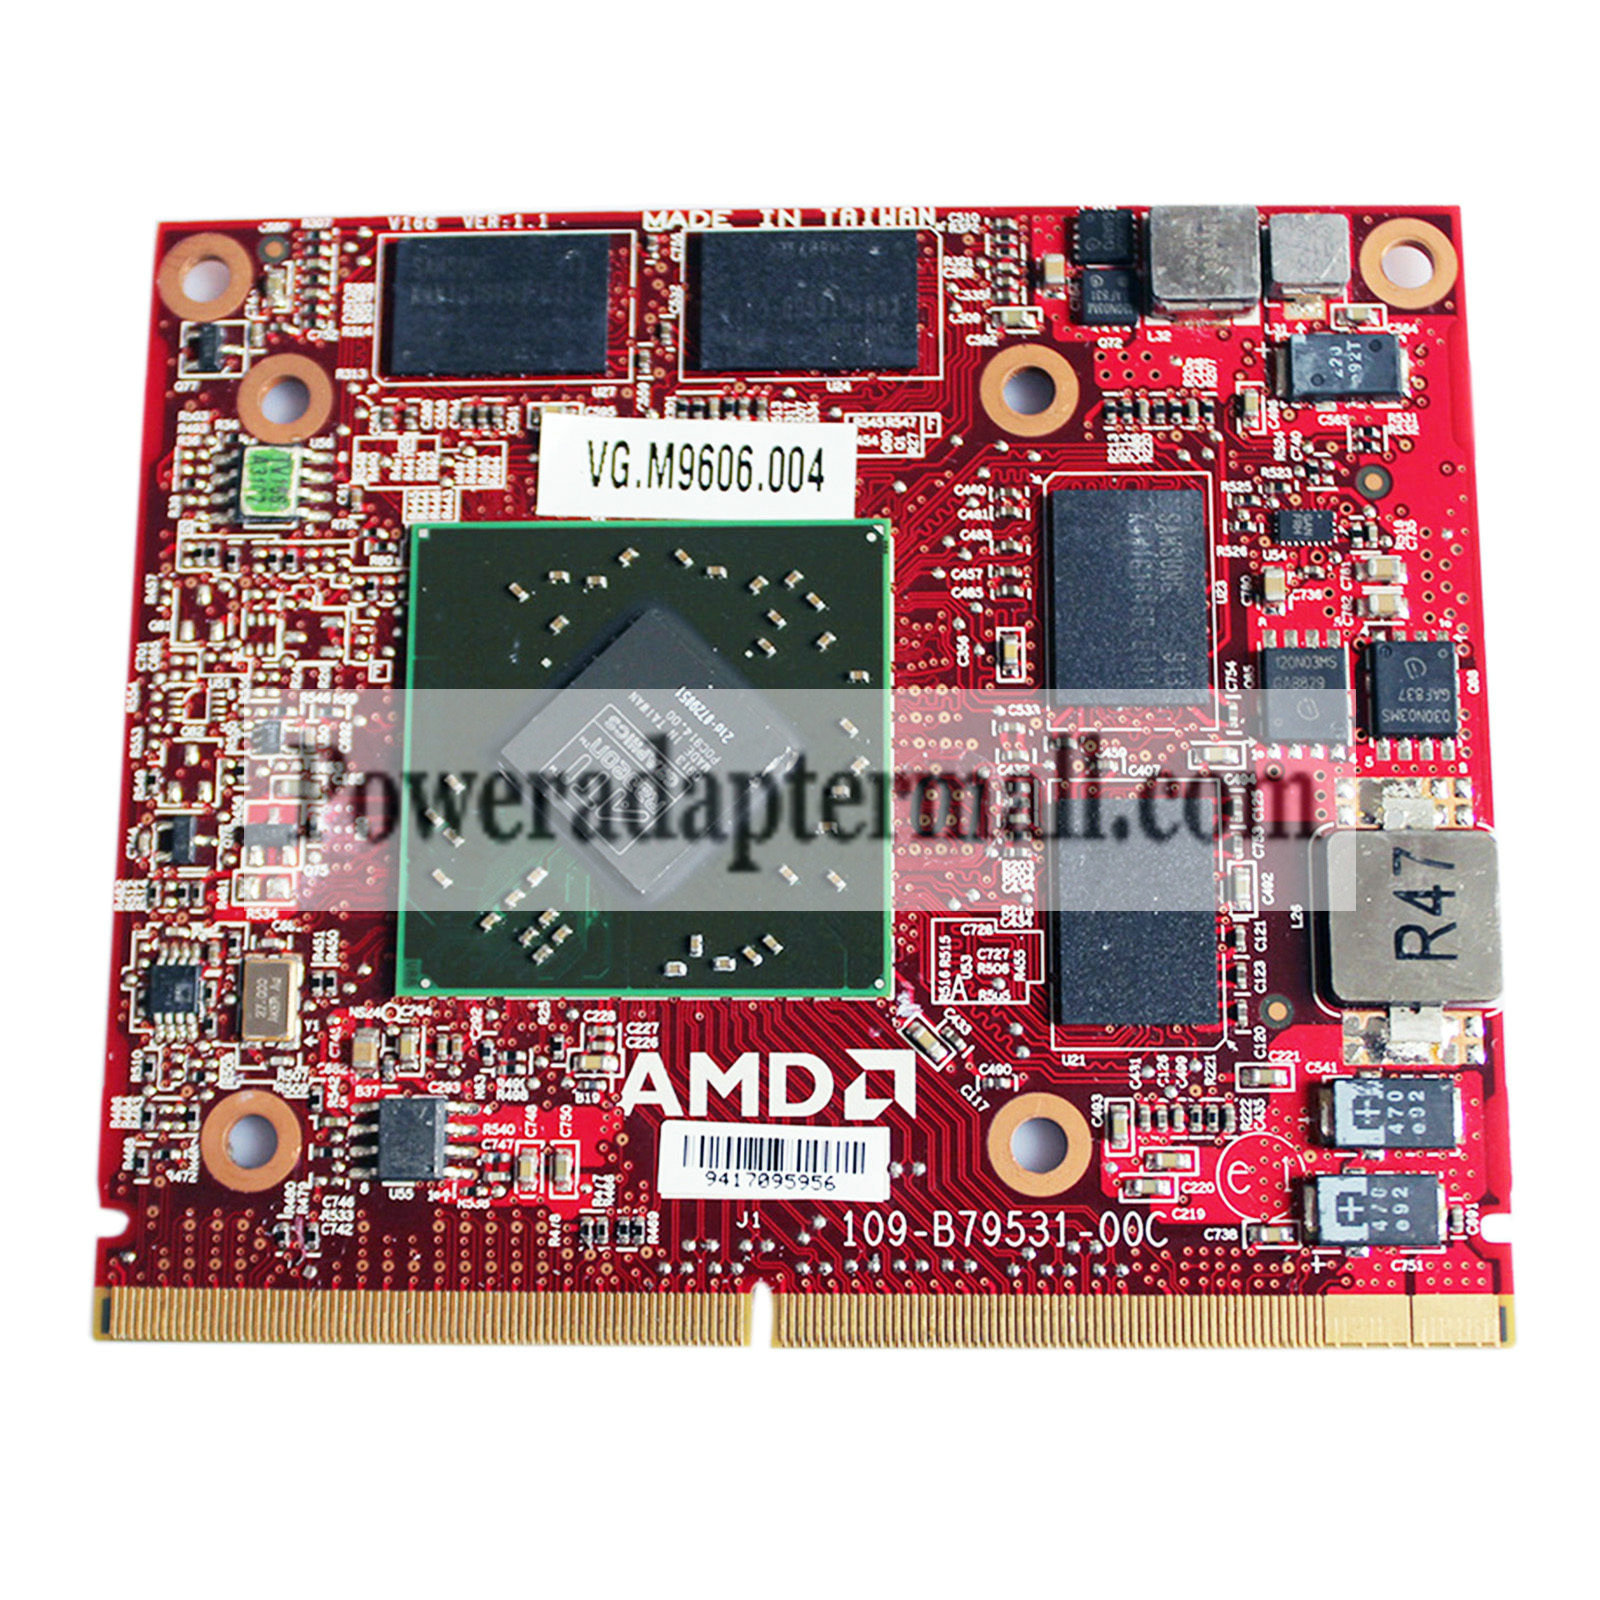 ATI HD4670 VG.M9606.004 DDR3 1GB MXM 216-0729051 Video VGA card